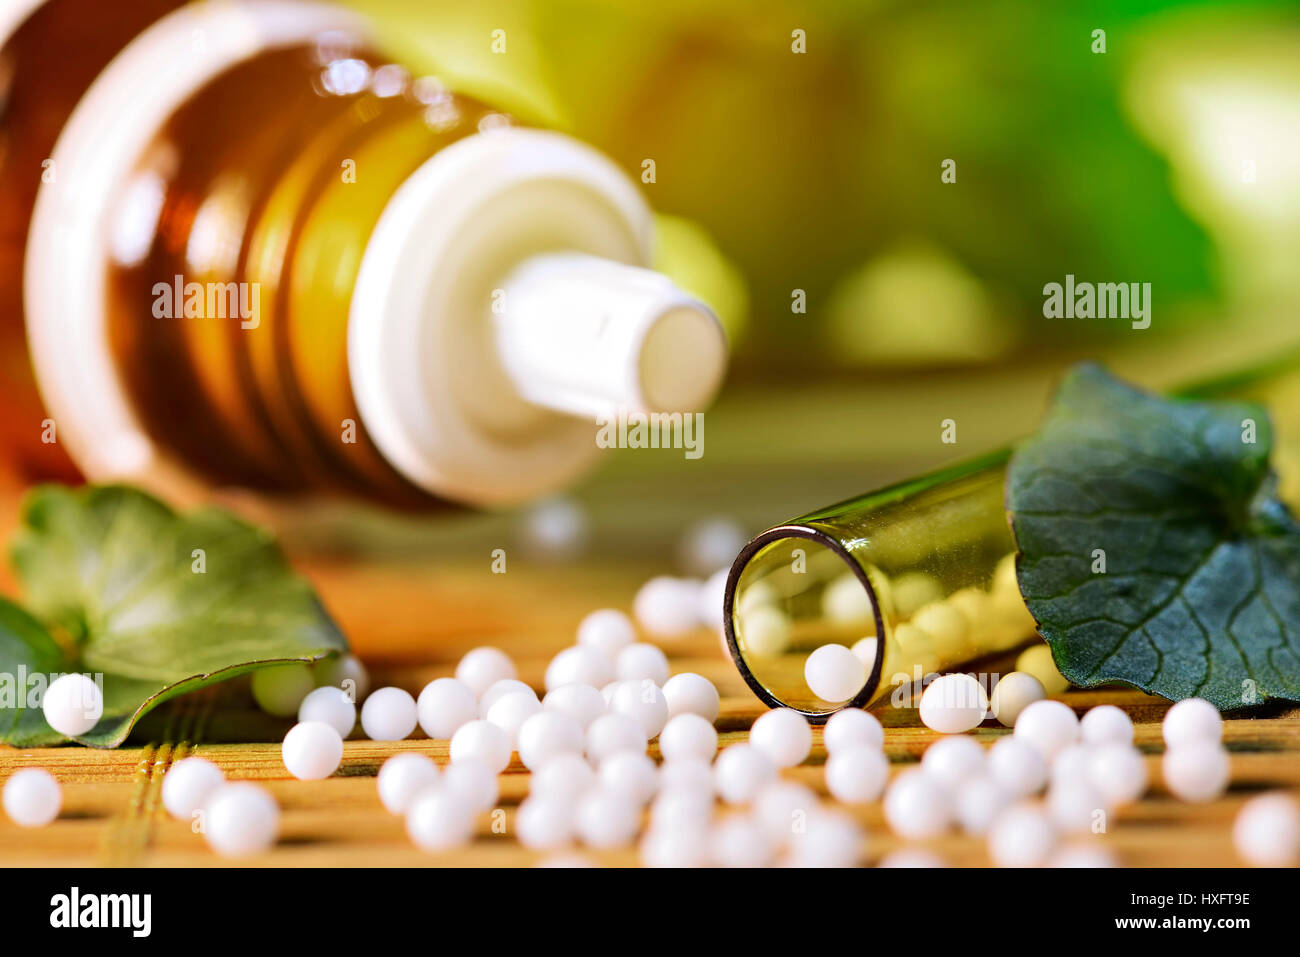 Globuli, medicamento homeopático, homÃ¶opathisches Arzneimittel Foto de stock